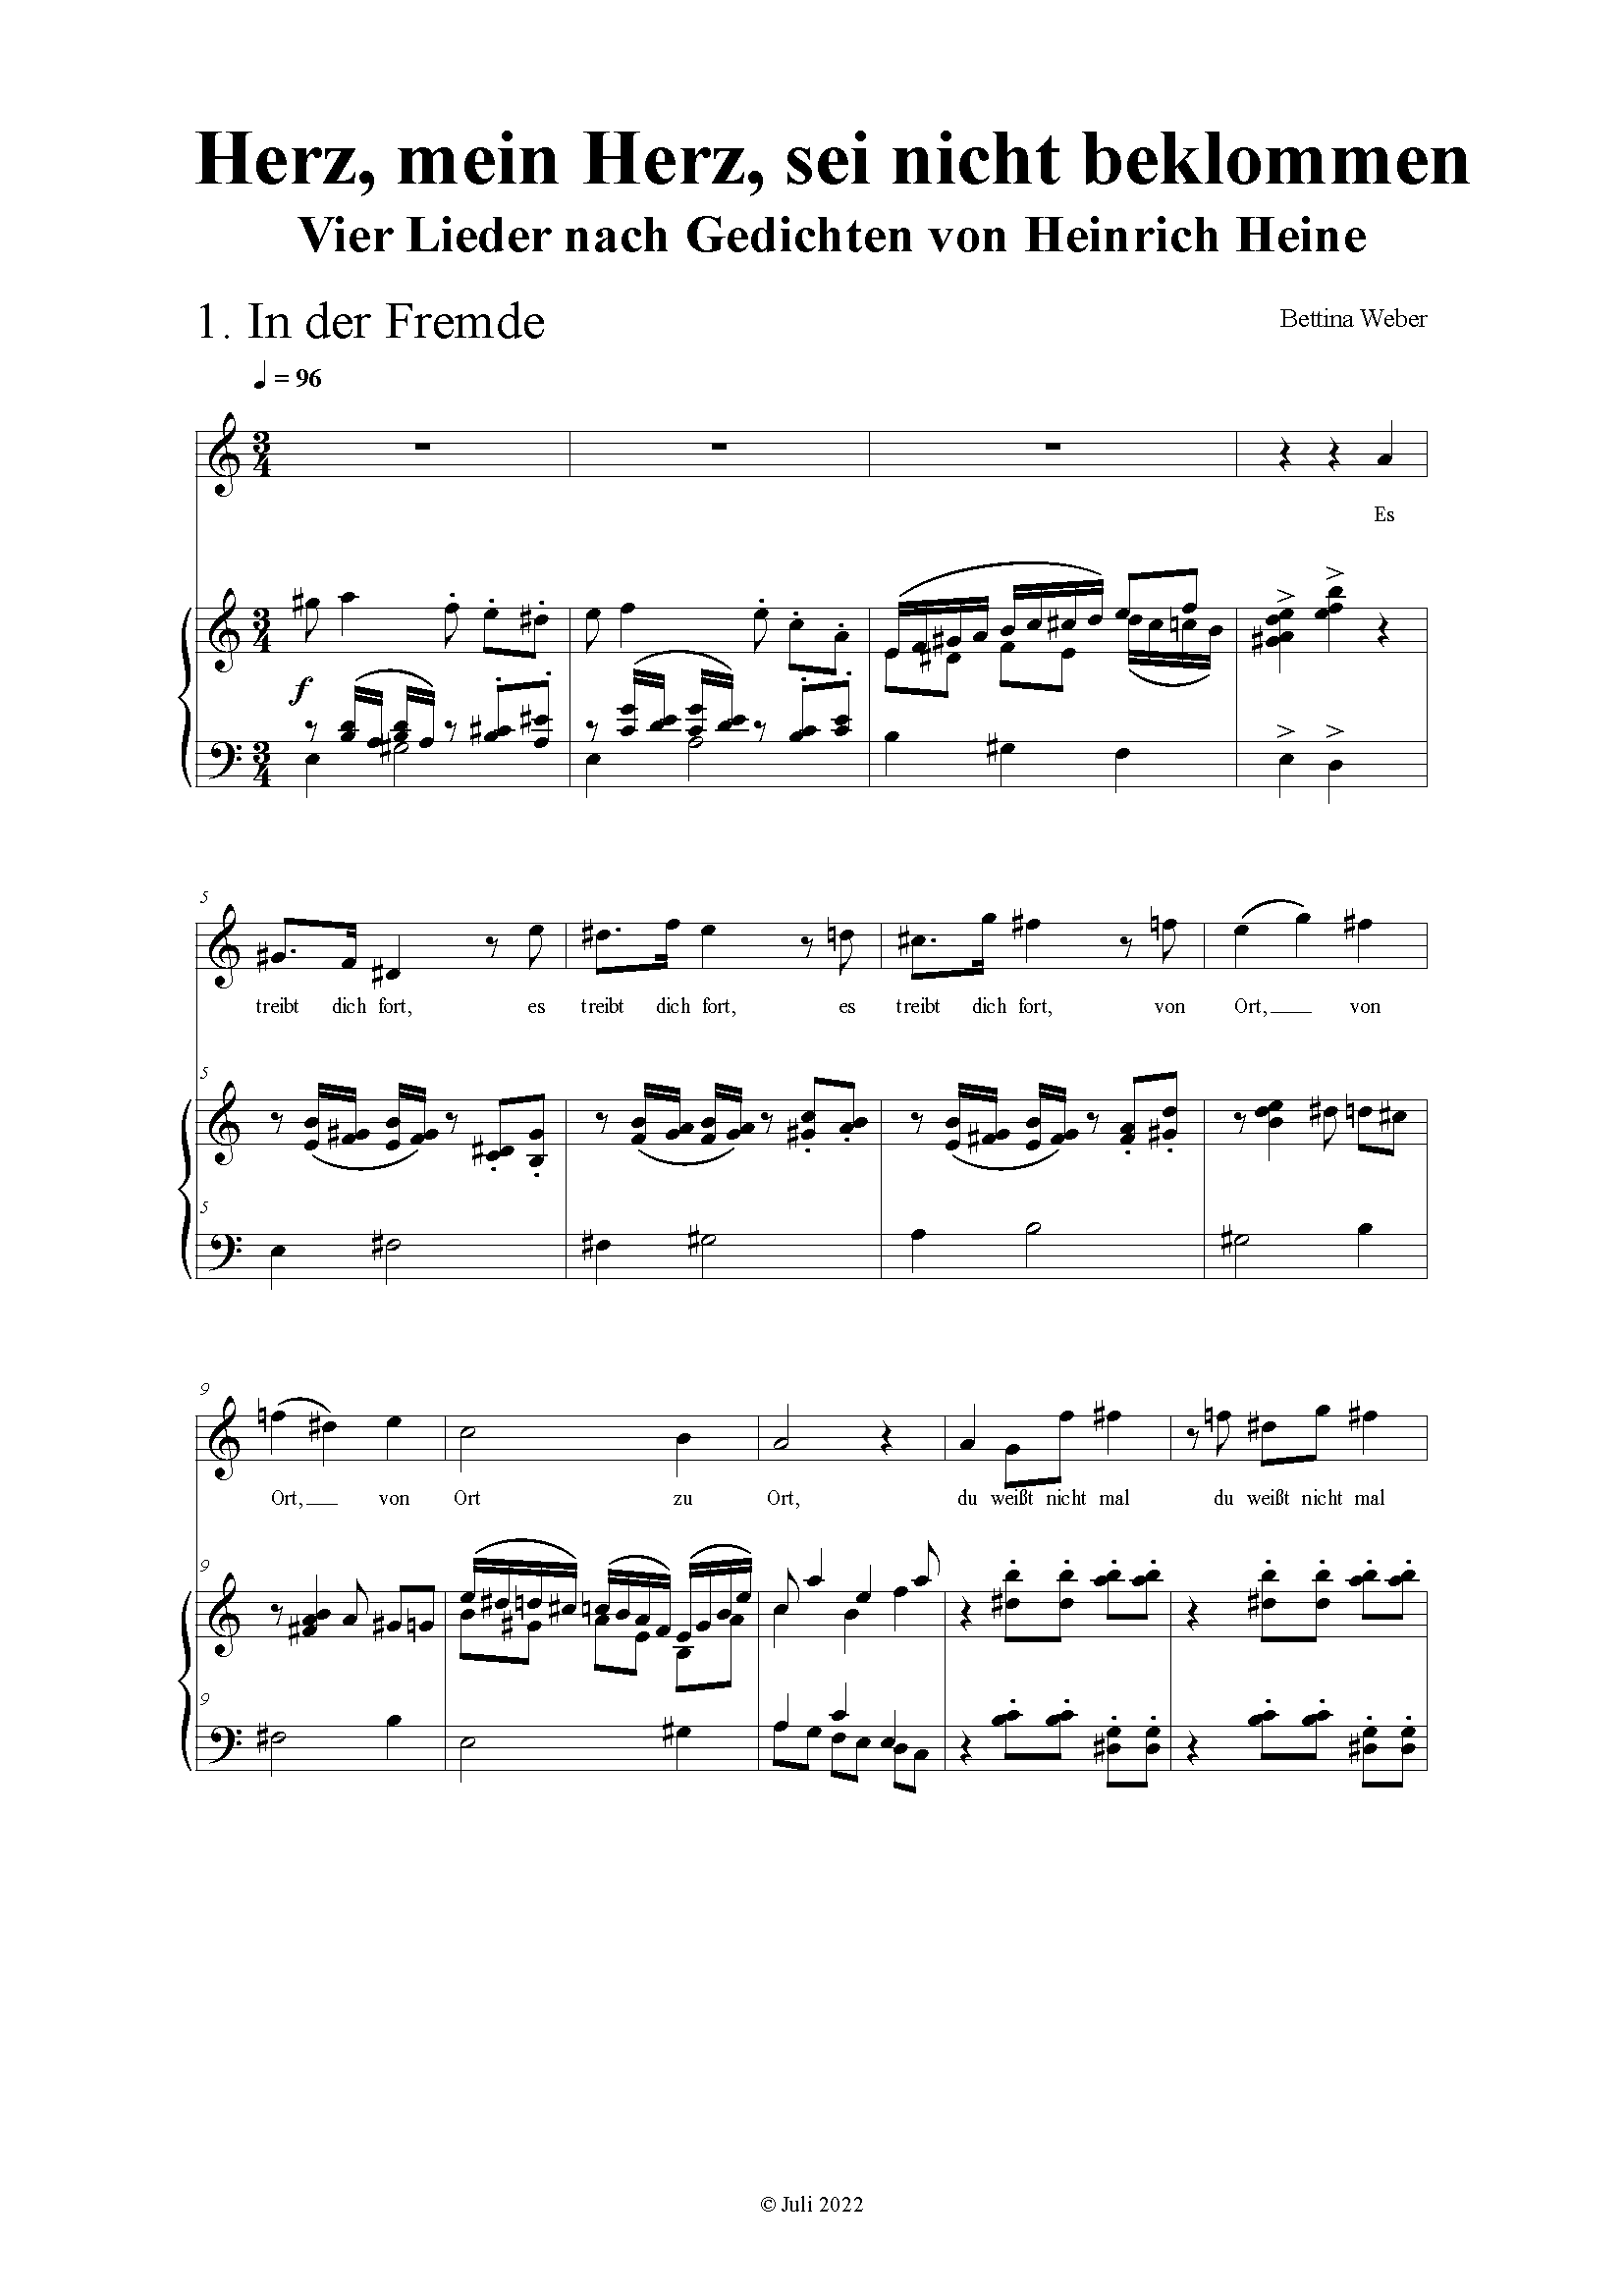 Notenbeispiel Heine-Lieder